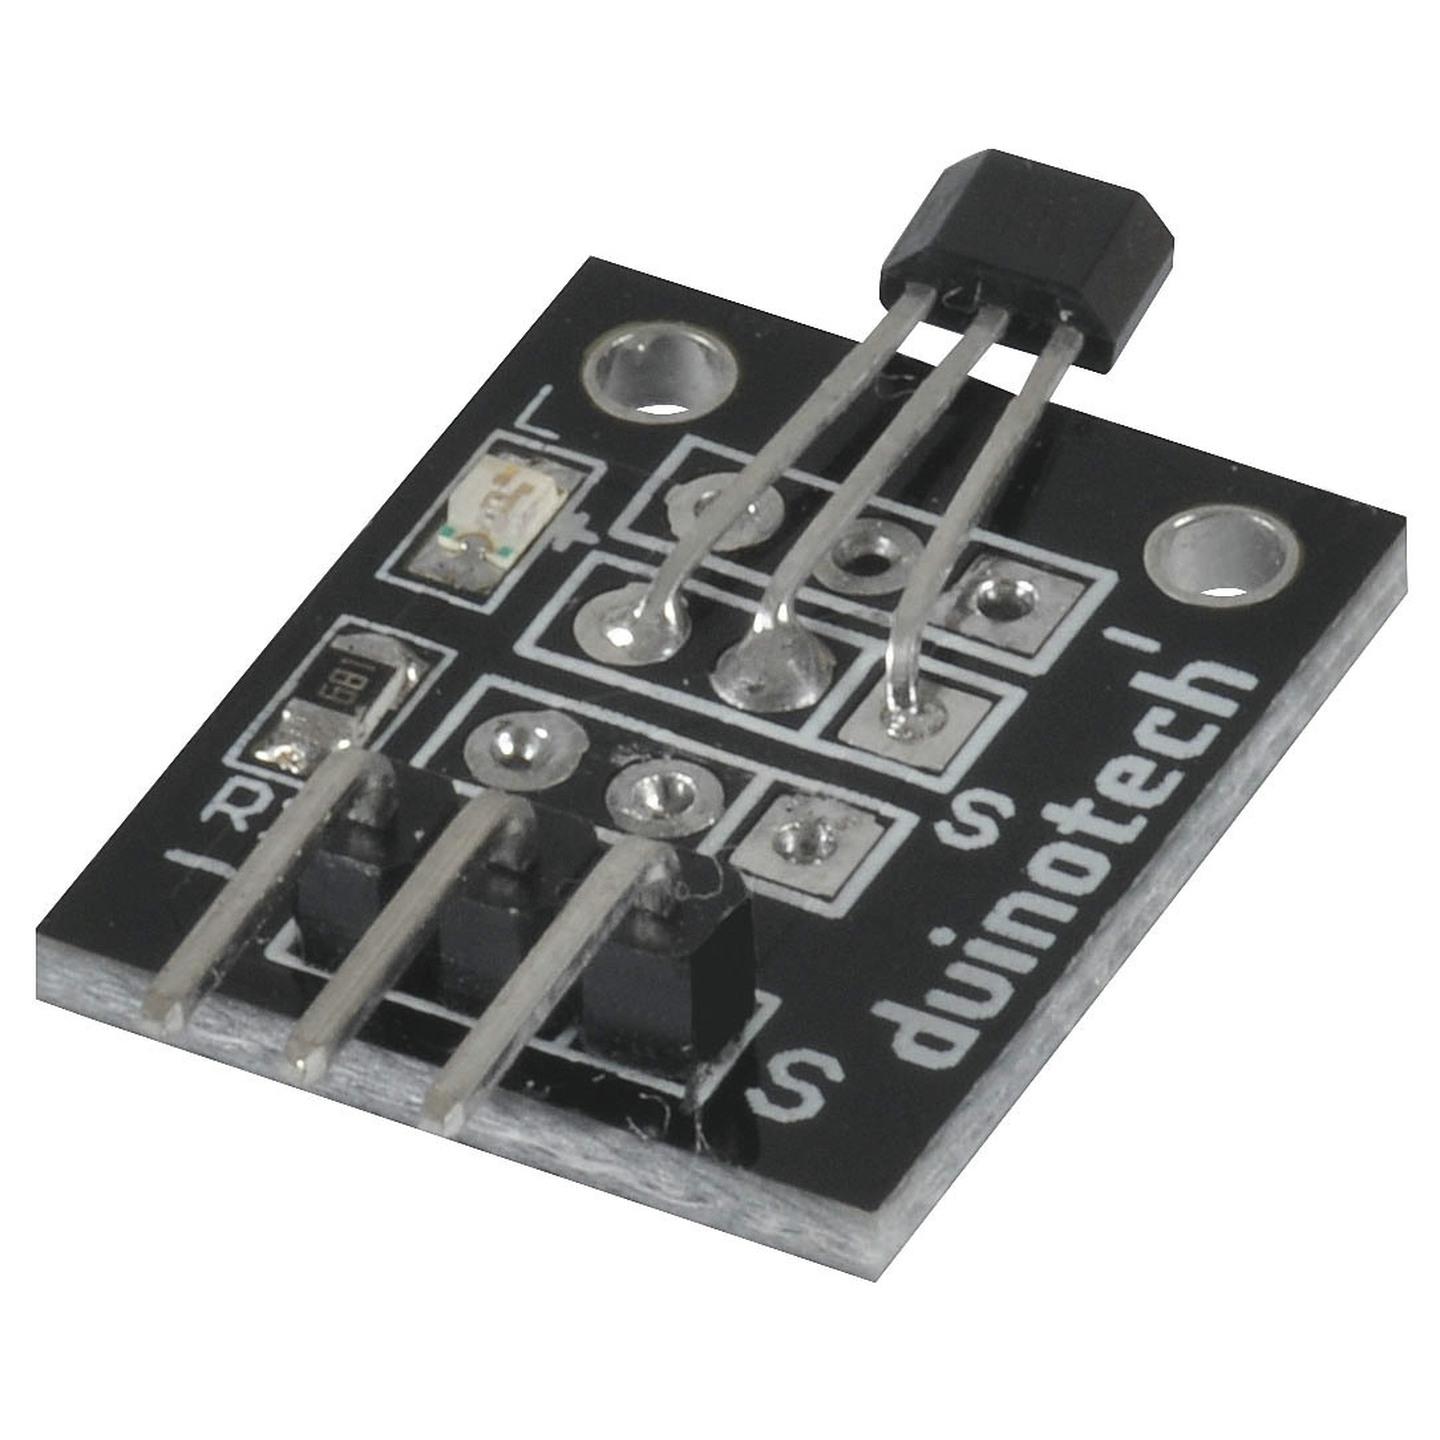 Duinotech Arduino Compatible Hall Effect Sensor